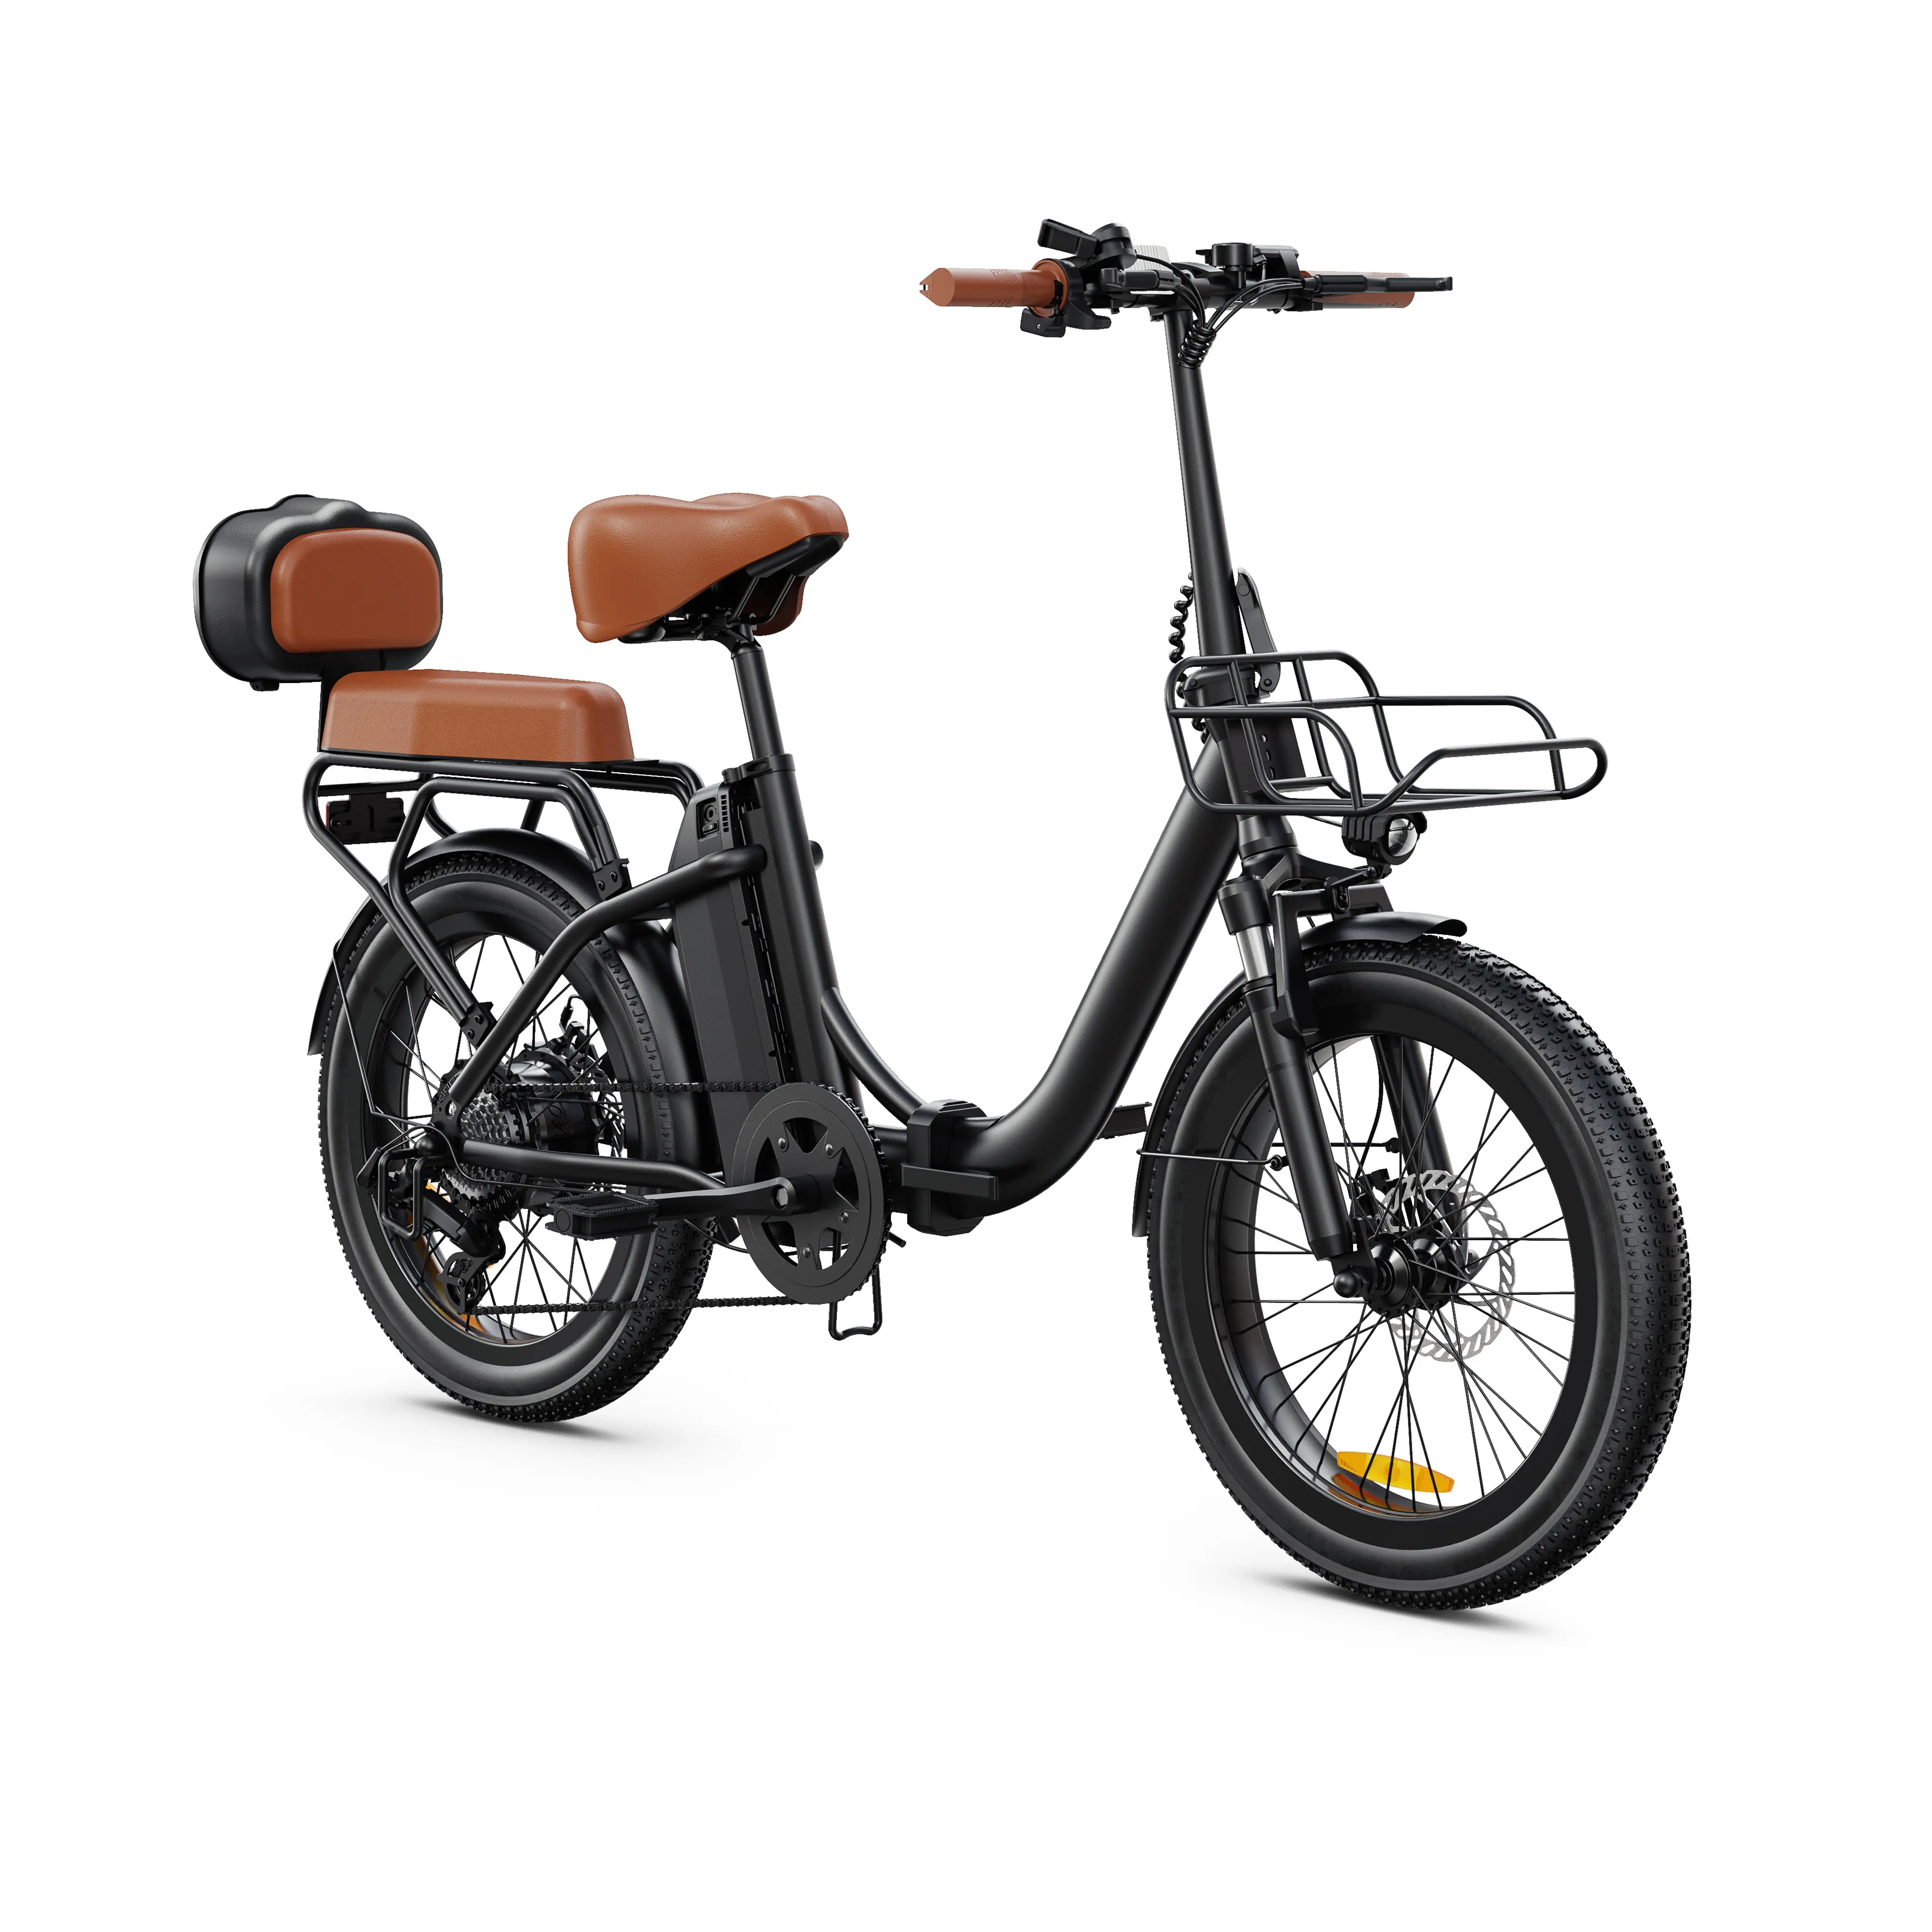 ODM & OEM, 500 Вт, толстые шины, электрический велосипед с большими колесами, 20 дюймов, внедорожный Электронный велосипед, цены на моторный Пляжный круизер, чоппер, электрический велосипед, цикл